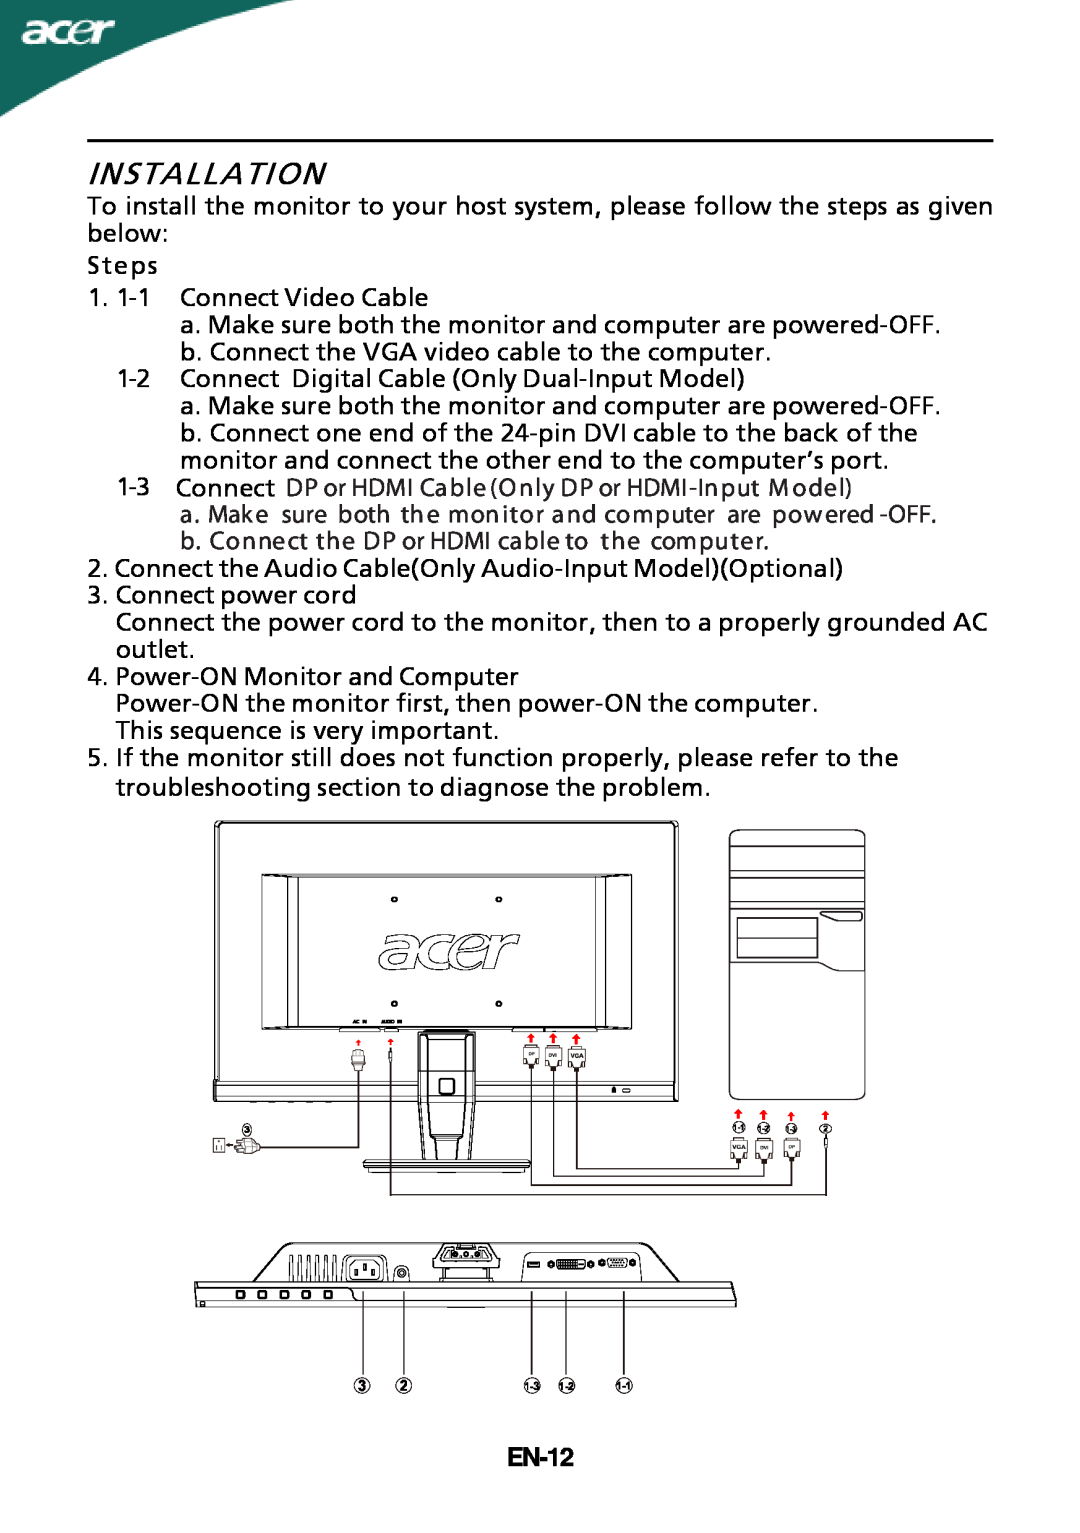 Acer P226HQV, P216HV manual Installation, EN-12 